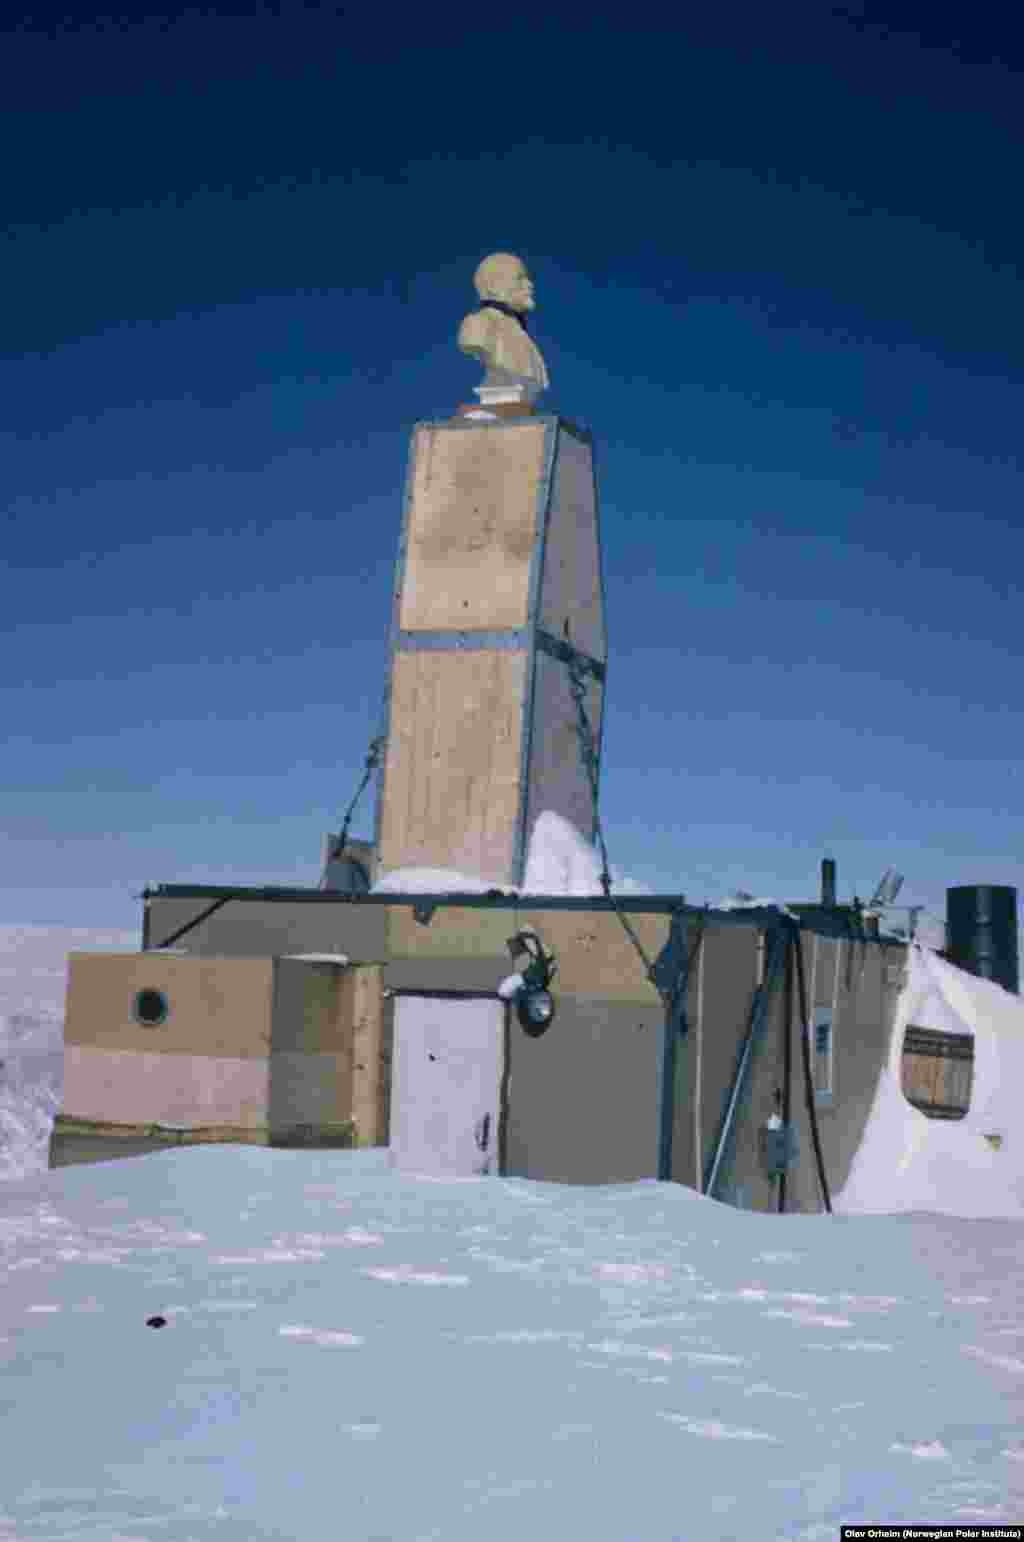 Sljedeće fotografije usamljenog Lenjina su iz 1960-ih. Privremena stanica već je napola pod snijegom, ali Lenjin još stoji na vrhu dimnjaka. Olav Orheim iz norveškog Polarnog instituta snimio je ovu fotografiju tijekom sudjelovanja u drugoj fazi američke ekspedicije pod nazivom Land Traverse Queen Maud (1964-1967).